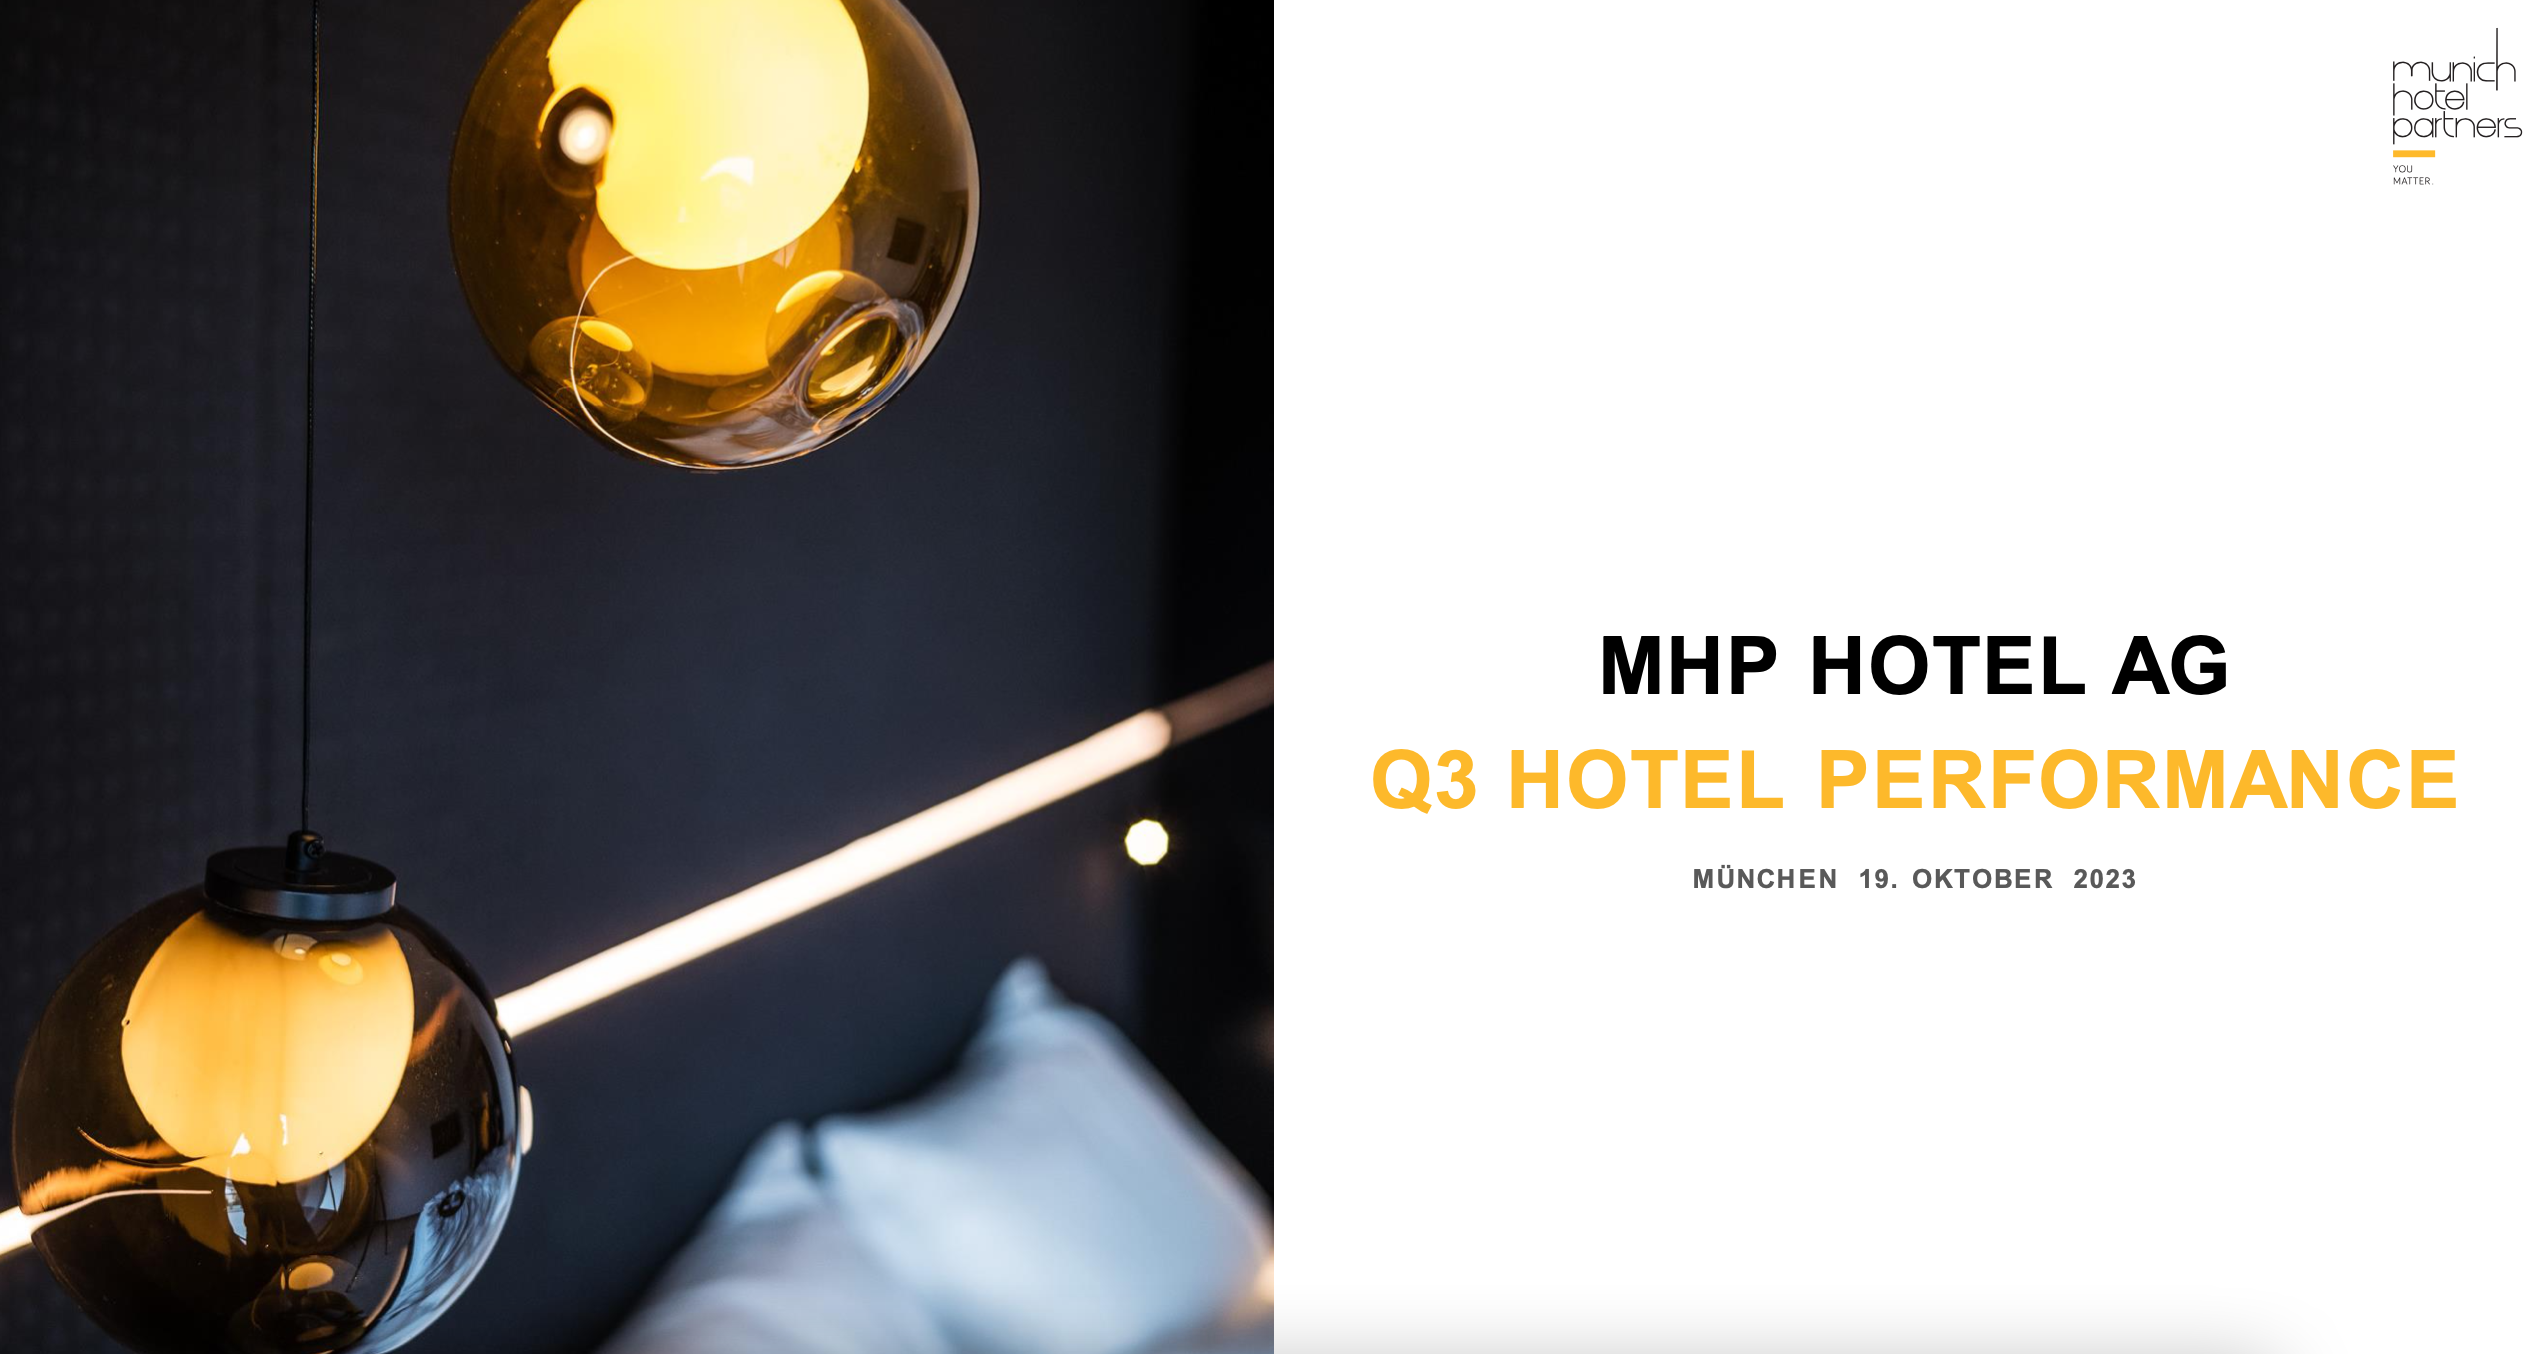 MHP Hotel AG mit anhaltend positiver Entwicklung der Hotel-Performance